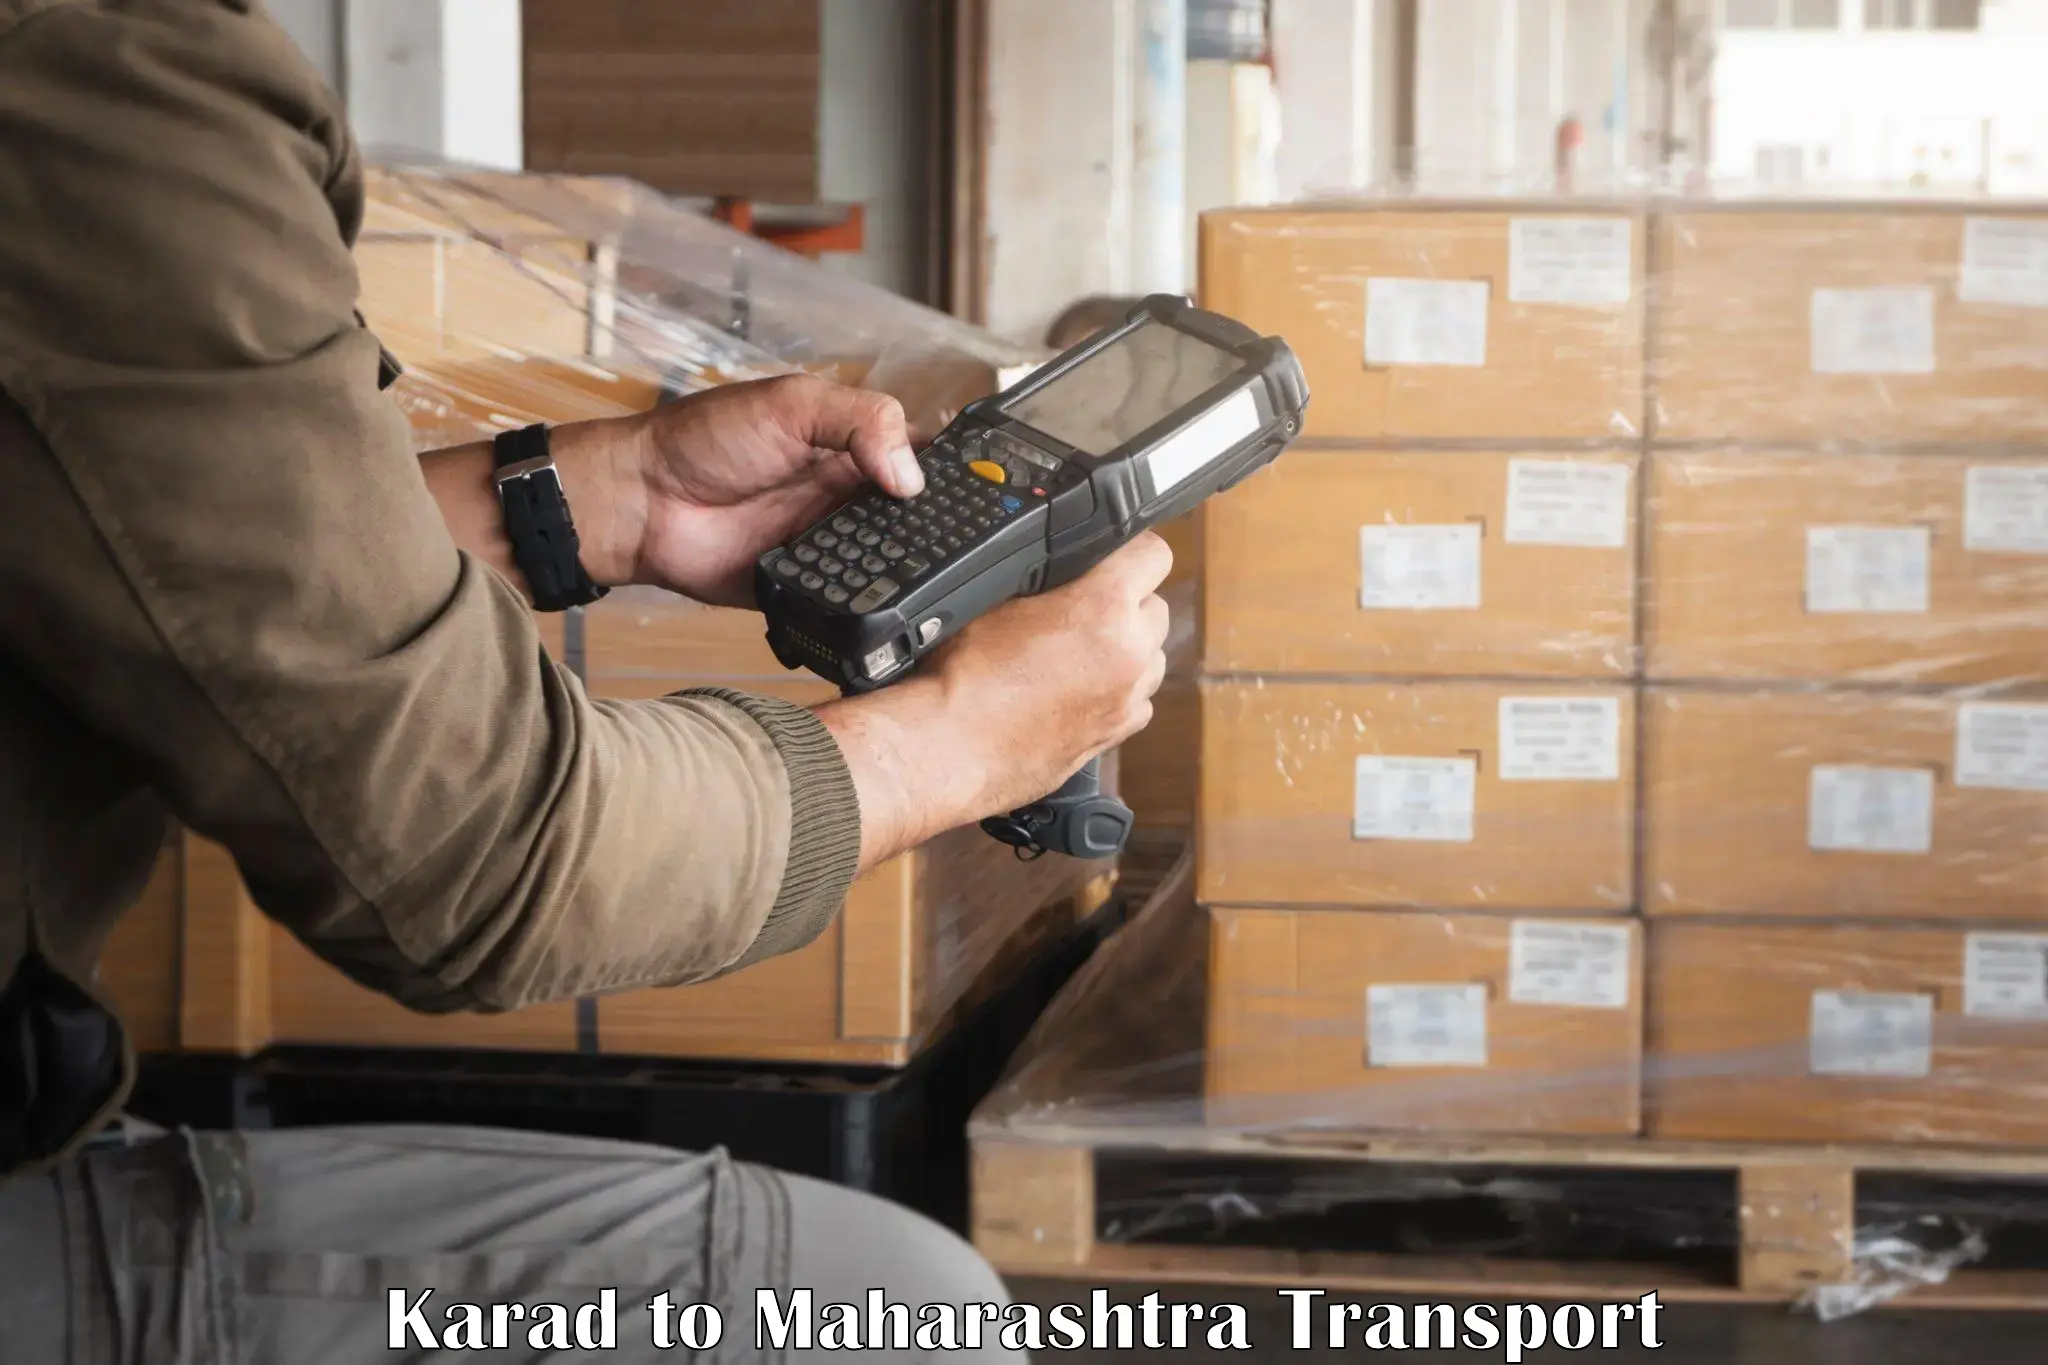 Parcel transport services Karad to Walchandnagar